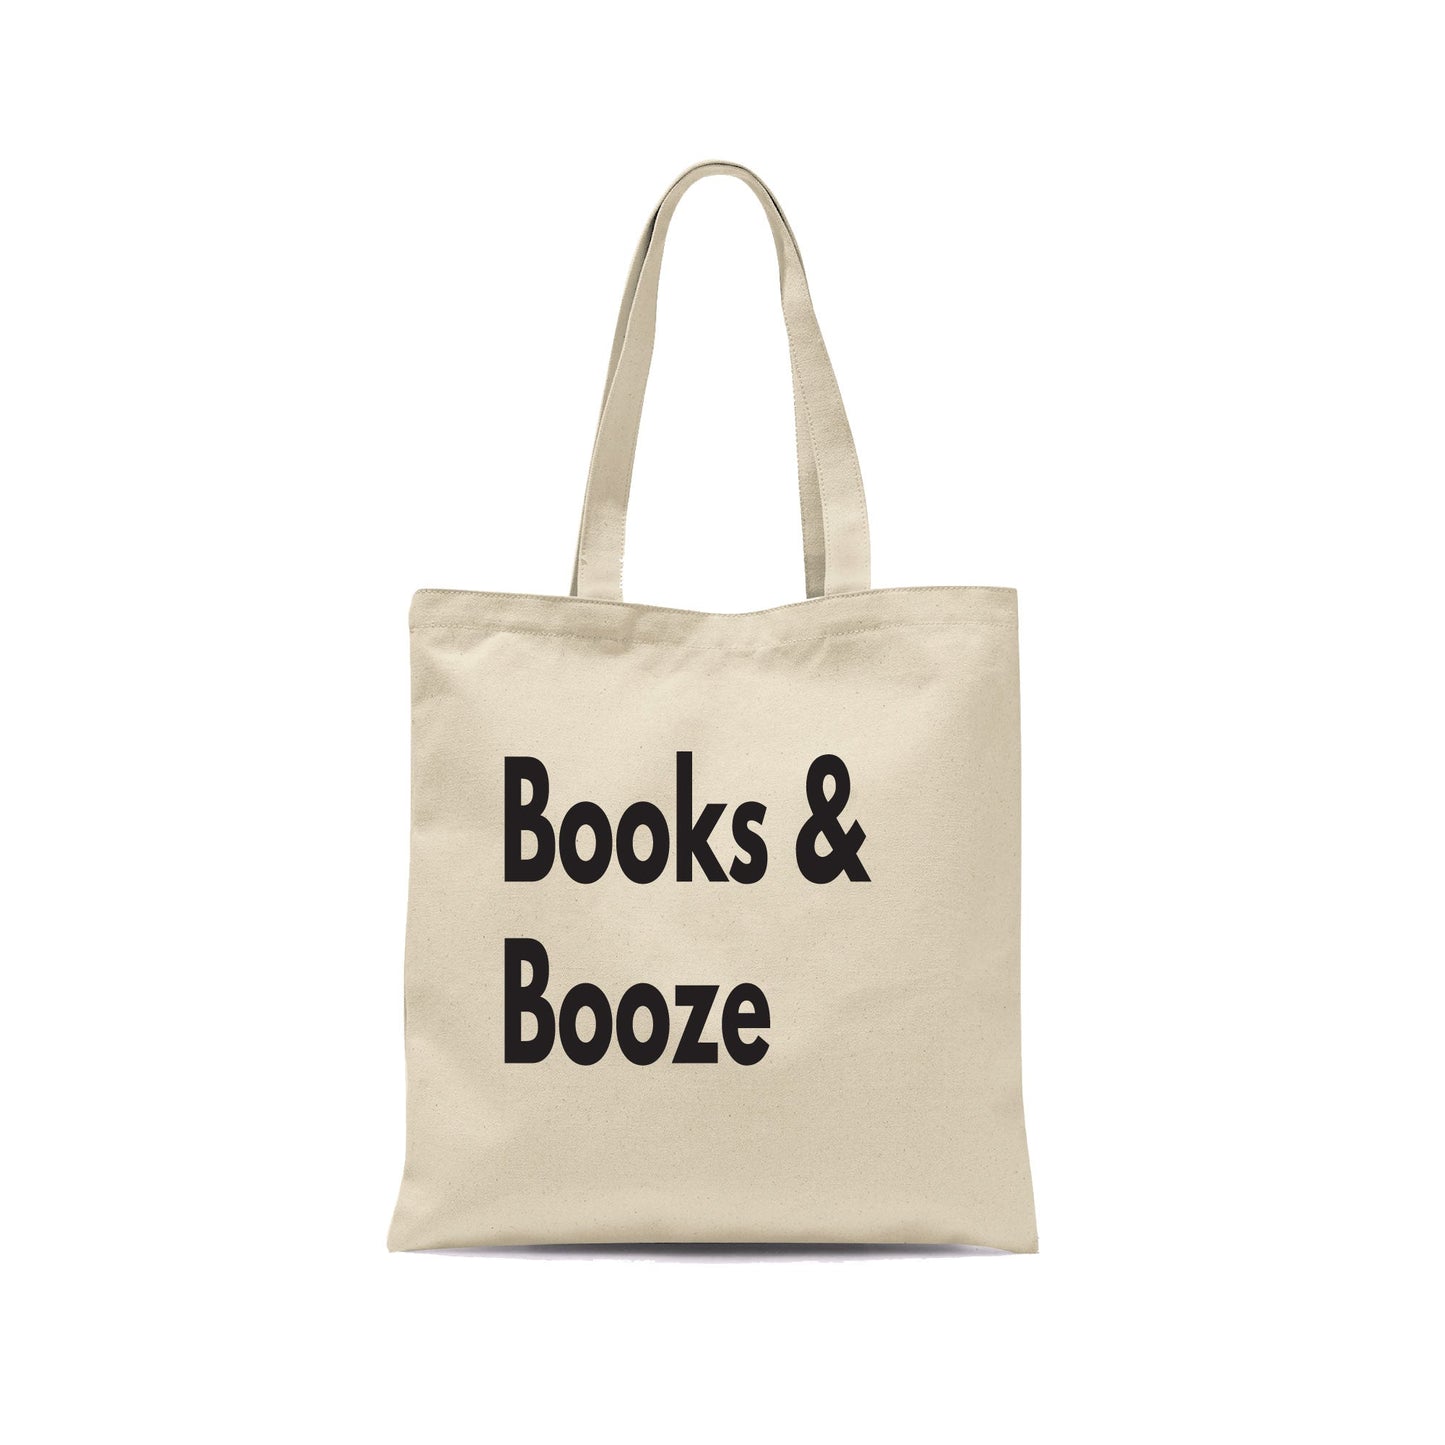 Books & Booze Funny Tote Bag-Totes-Crimson and Clover Studio